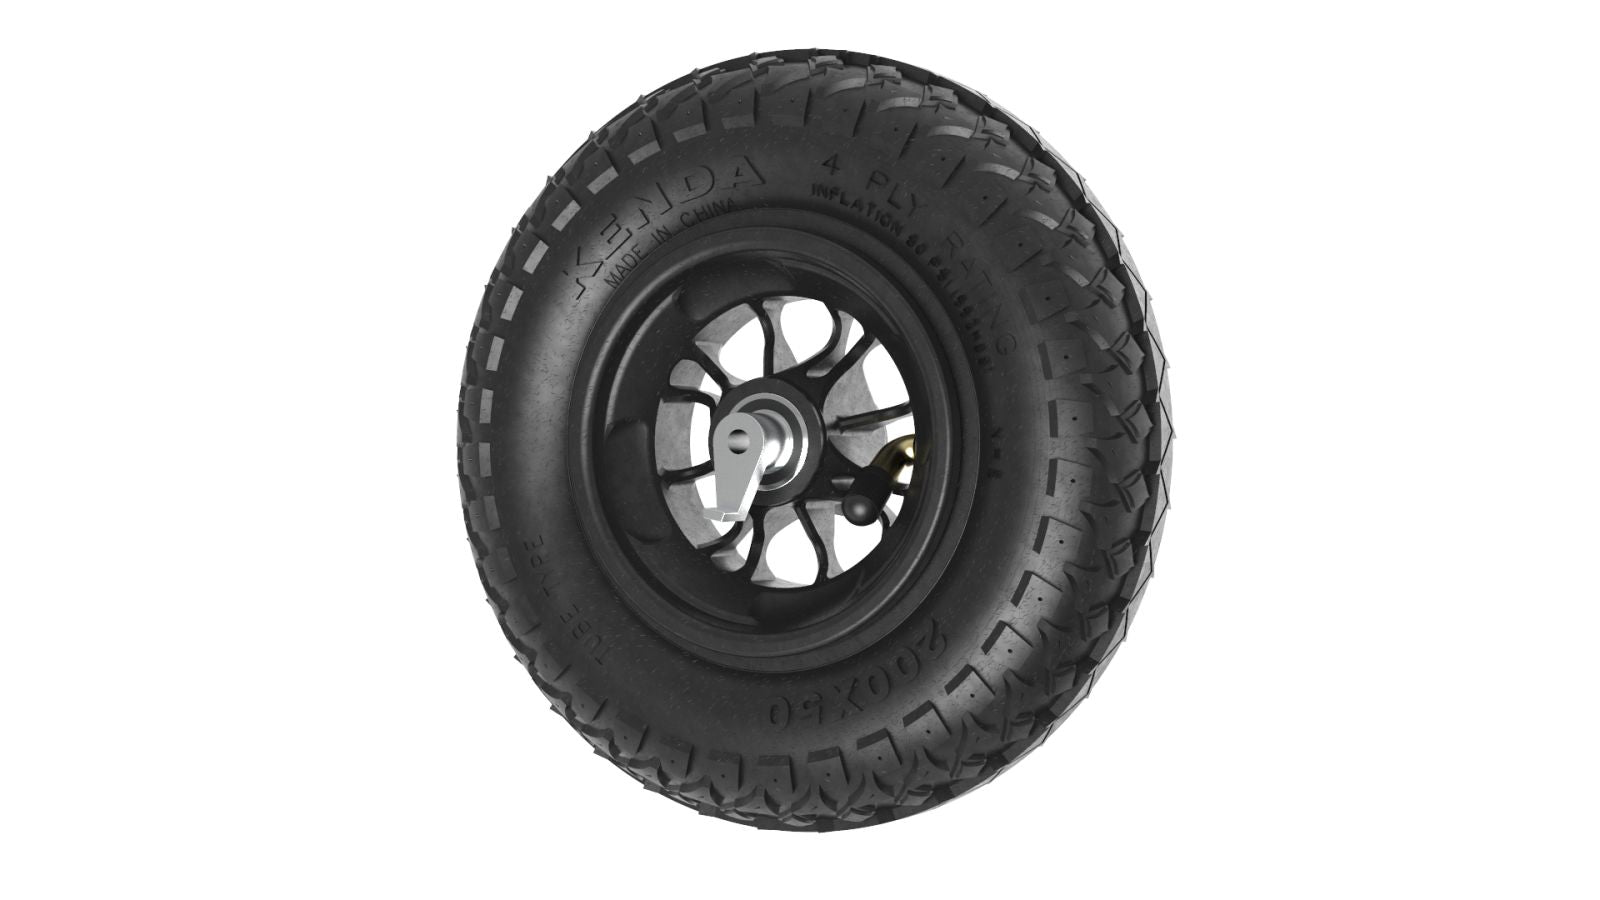 Wheel 8 inch Reverse-locked Black Roadstar